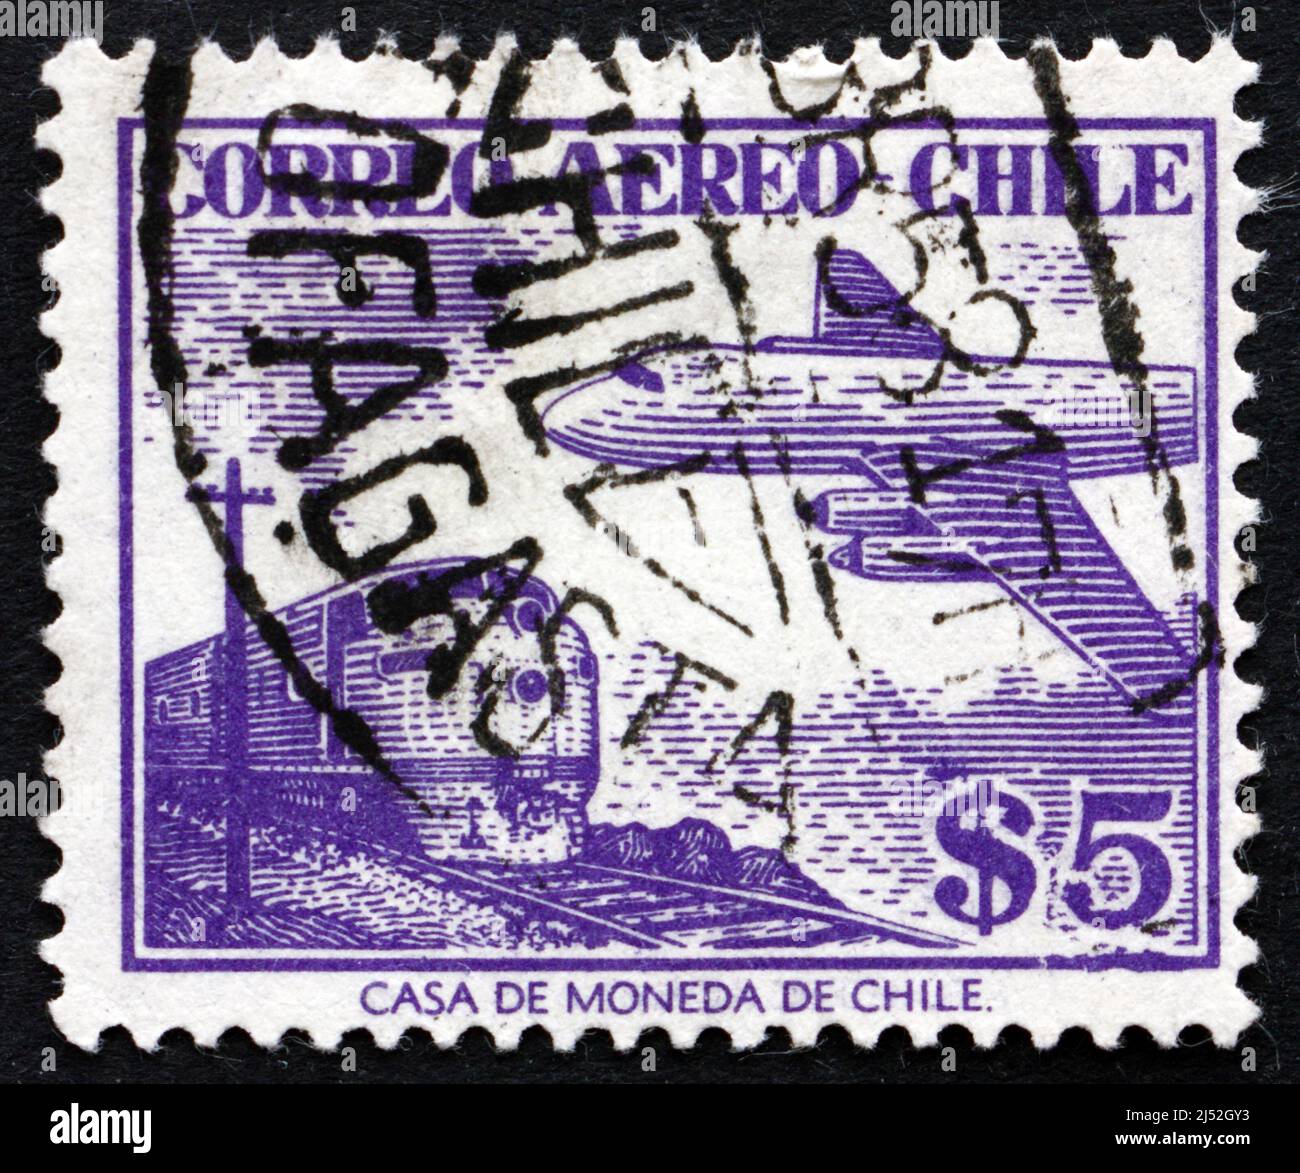 CHILI - VERS 1956: Un timbre imprimé au Chili montre train et avion, vers 1956 Banque D'Images